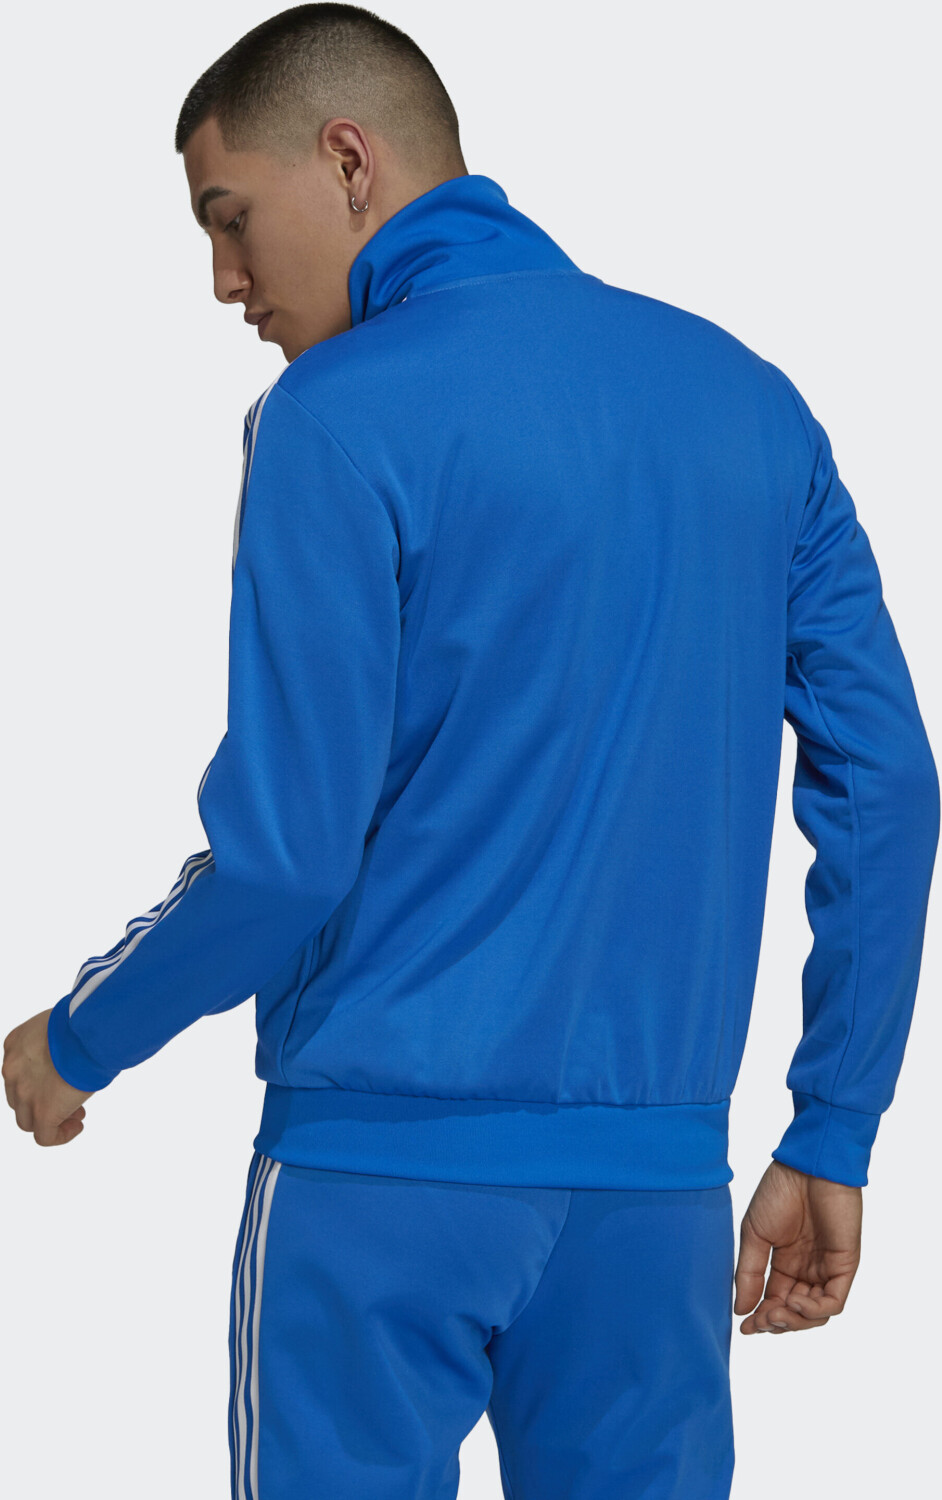 Primeblue Beckenbauer Jacket blue | bei adicolor bird Classics 62,10 Preisvergleich ab Adidas € (H09113) Originals